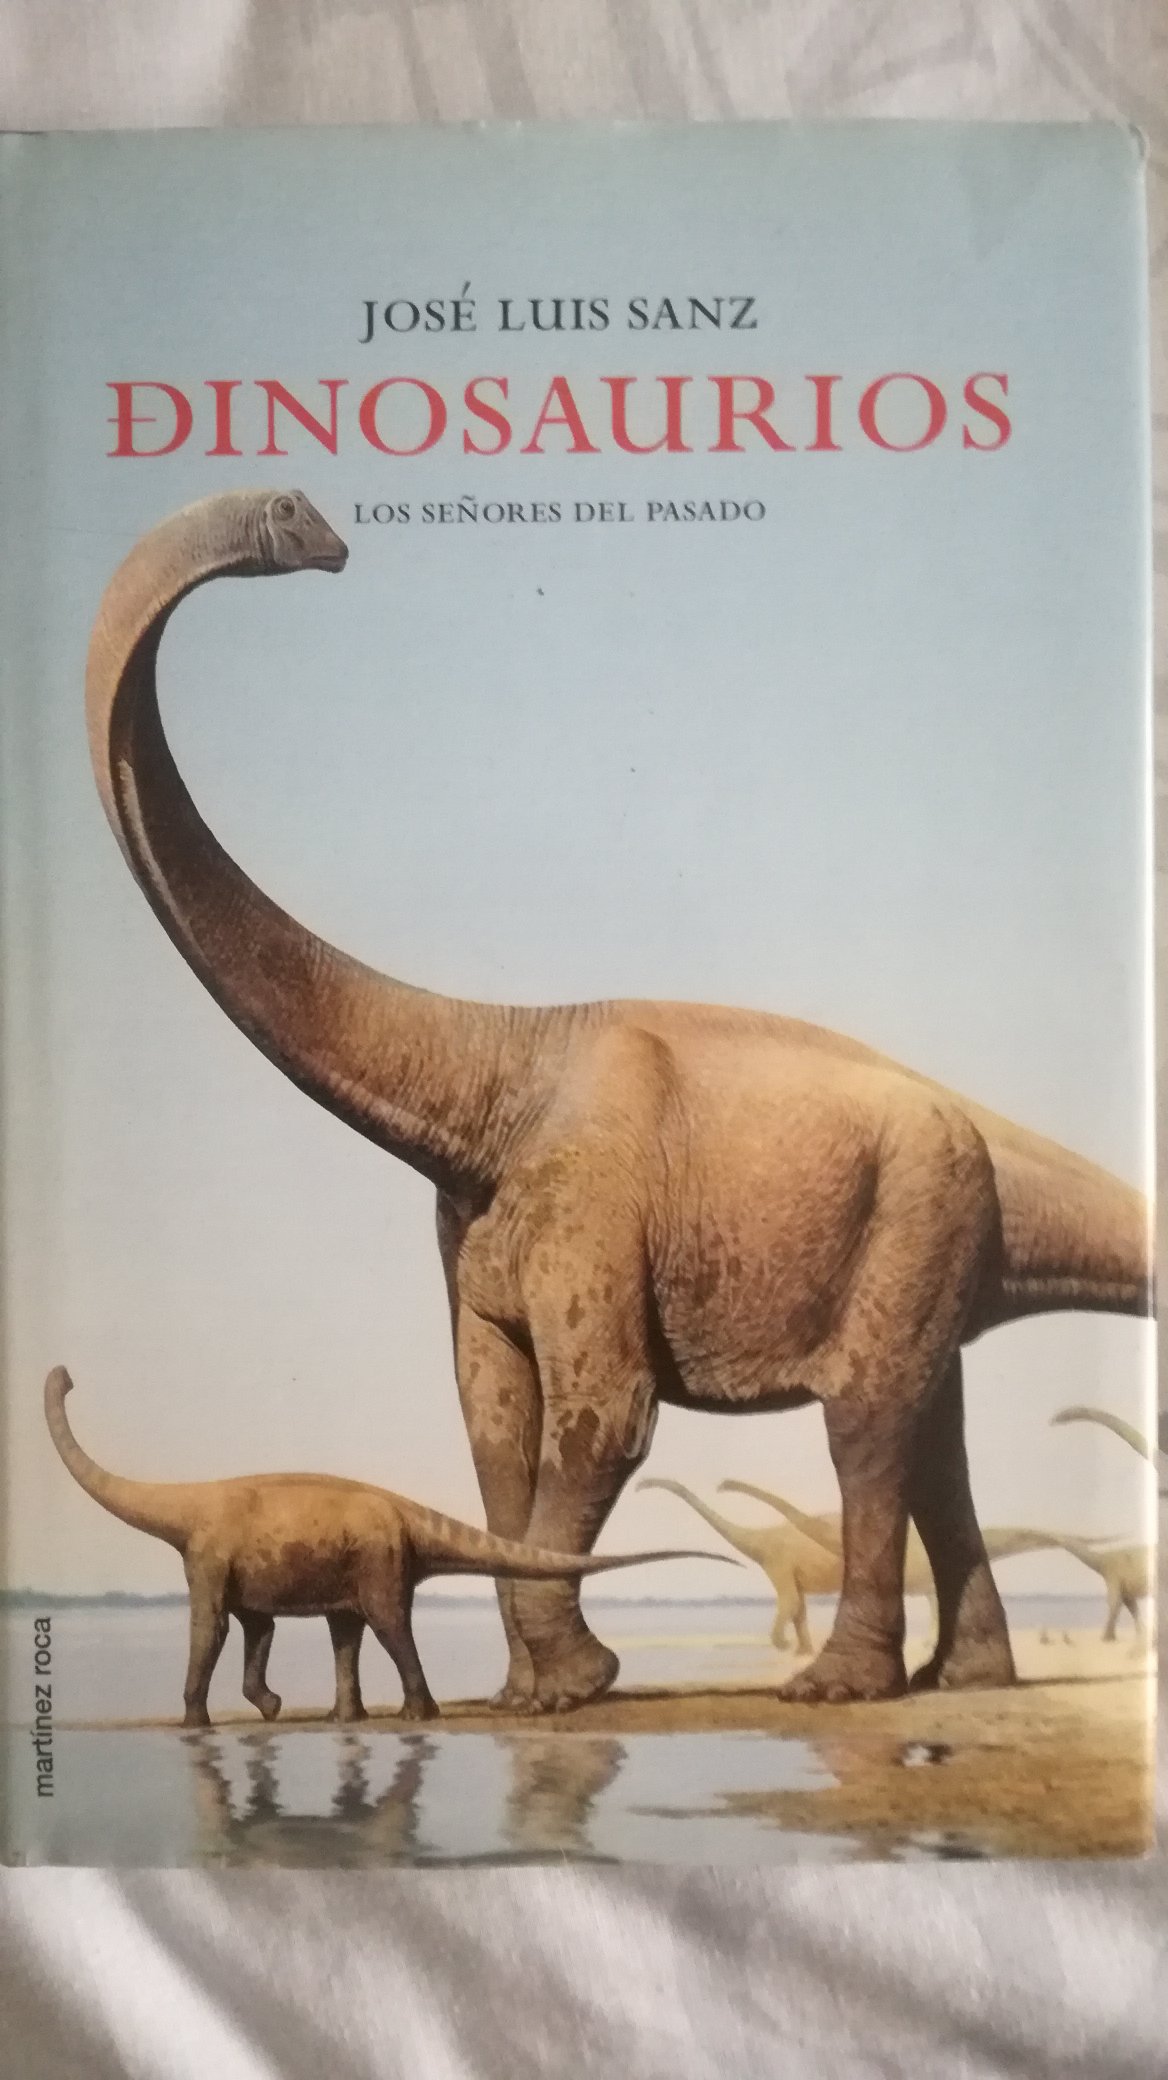 Empleado Radar adolescente Javier Salas Herrera on Twitter: "¿Buscáis libros sobre paleontología y no  sabéis por cuales empezar? Pues hoy os ayudaré enseñando parte de mi  biblioteca del paleomundo. ⏬¡Abro hilo!⏬" / Twitter